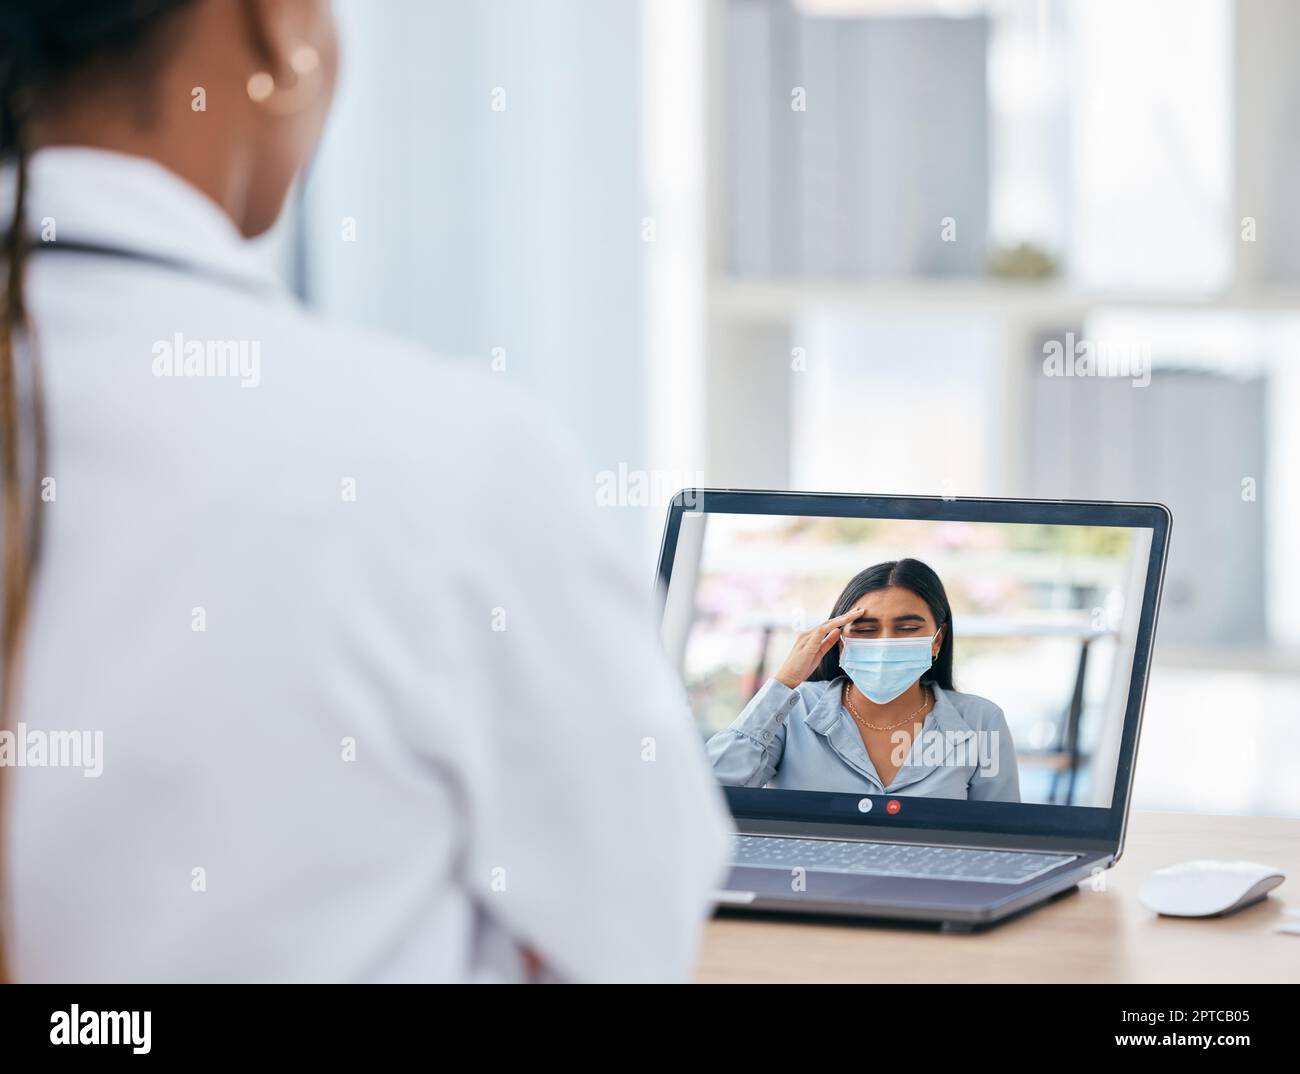 Covid, Videoanruf und Fernarbeit mit einer Patientin auf einem Laptop-Bildschirm, die sich online mit ihrem Arzt trifft. Gesundheitswesen, Medizin und Corona mit einem Weibchen Stockfoto